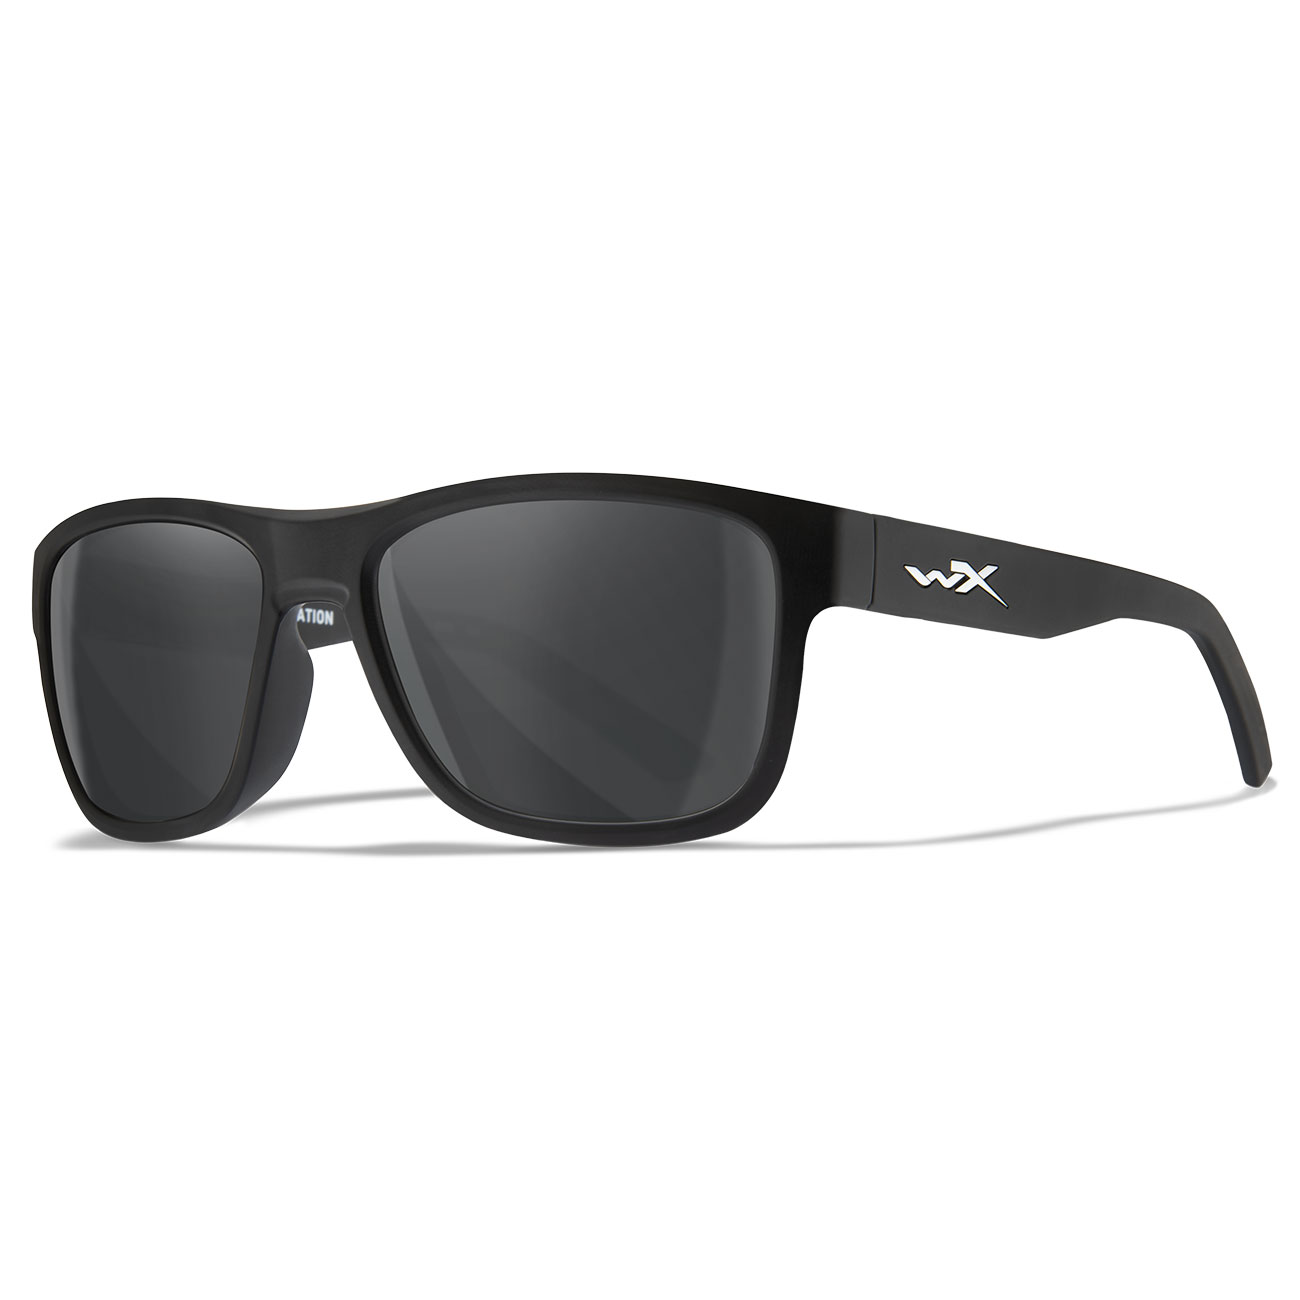 Wiley X Sonnenbrille Ovation matt schwarz Glser grau inkl. Brillenetui und Seitenschutz Bild 5